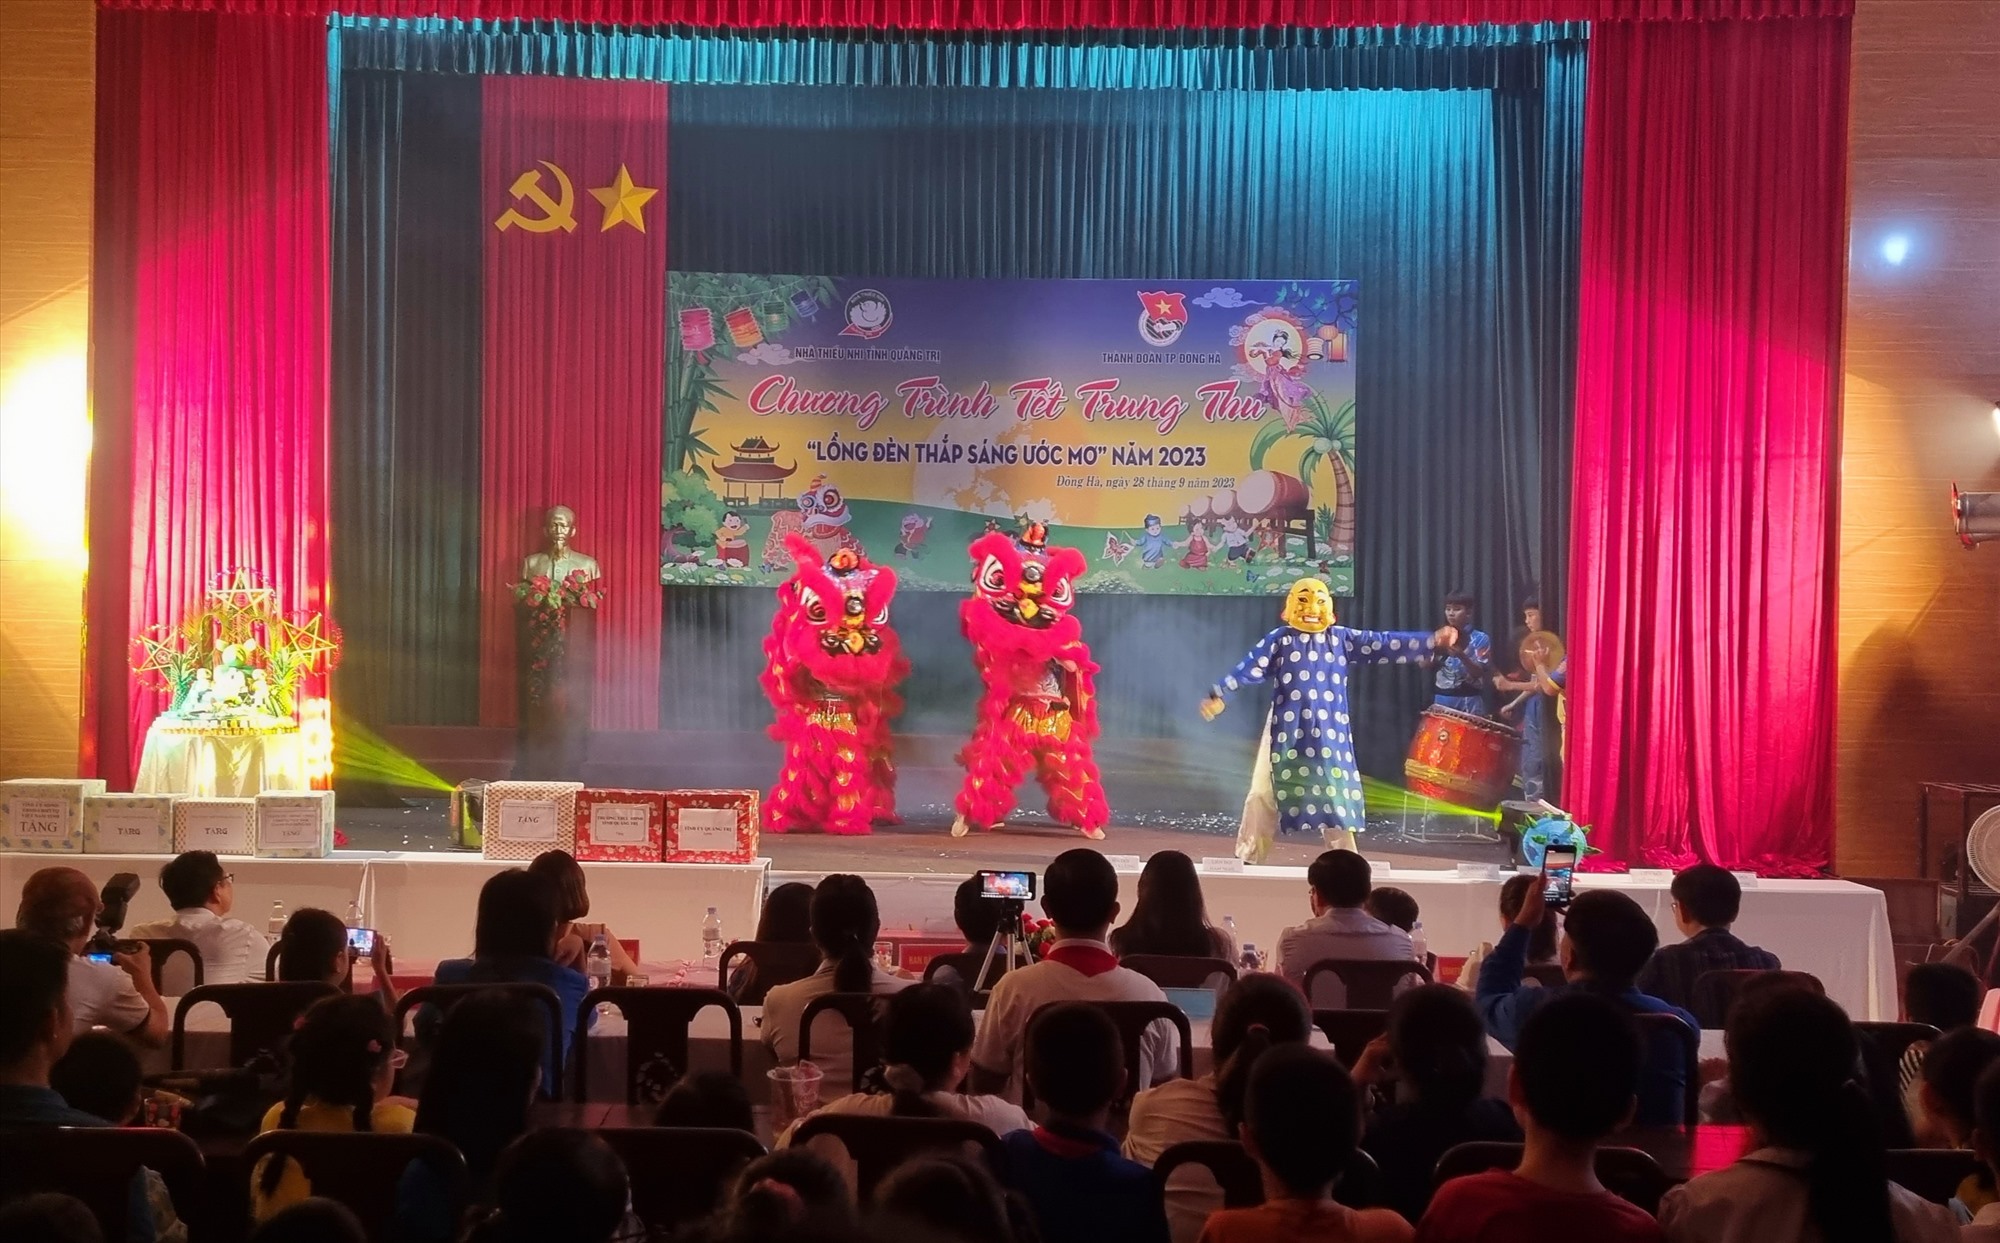 Màn múa lân vui nhộn, đẹp mắt do Đội Nghệ thuật Lân sư rồng Quang Anh biểu diễn - Ảnh: N.T